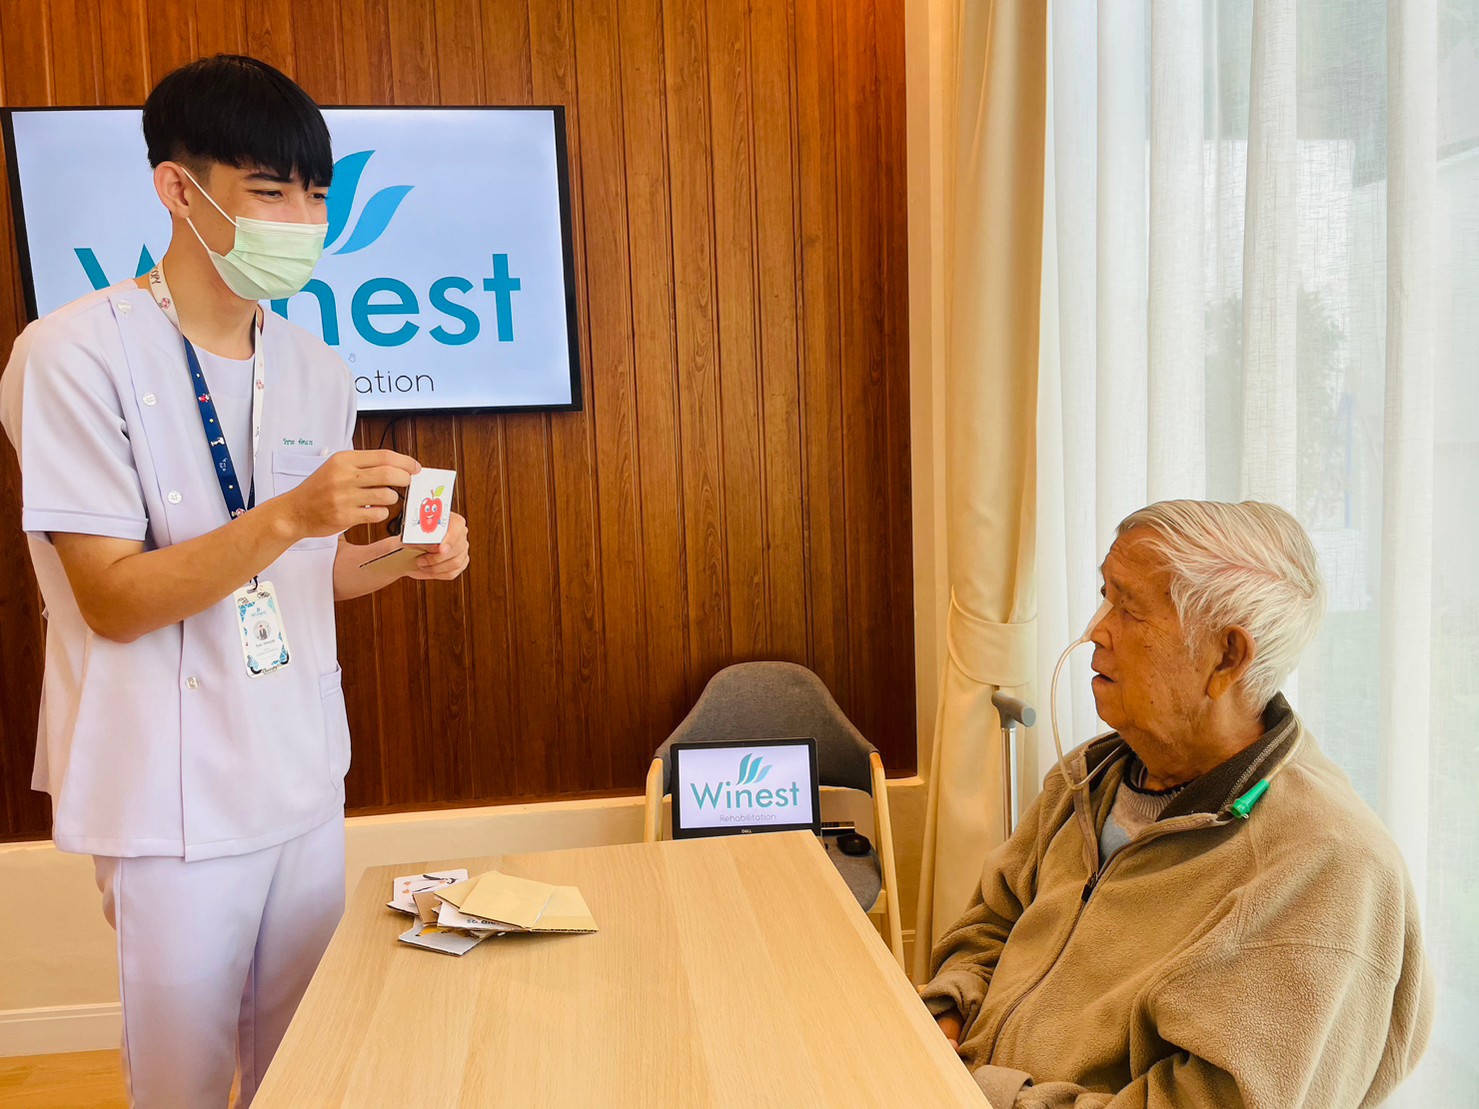 บุรุษพยาบาลจัดกิจกรรมโชว์ภาพผลไม้ ให้กับผู้สูงอายุชาย ที่ใส่สายให้อาหารทางจมูก